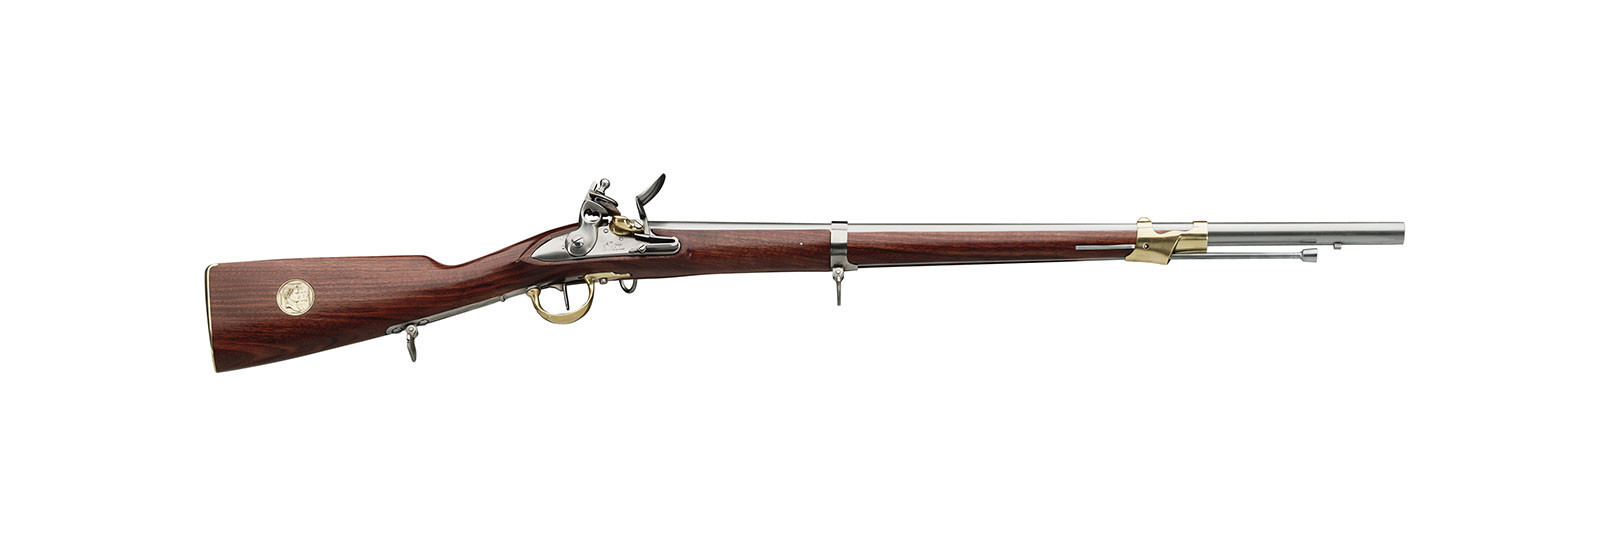 Fucile An IX De Cavallerie commemorativo